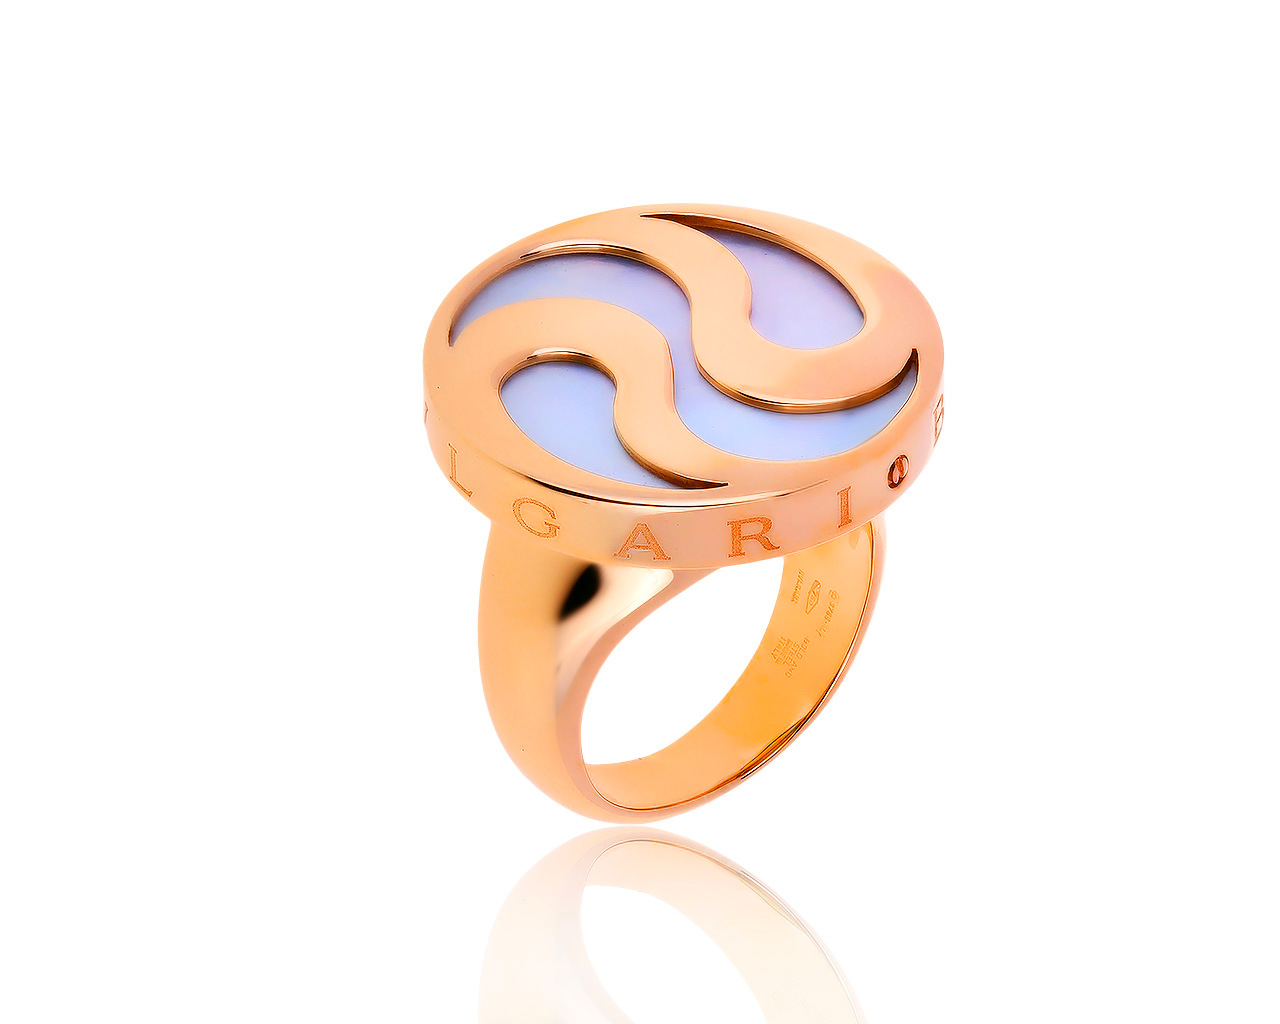 Оригинальное золотое кольцо с перламутром Bvlgari 004500/00